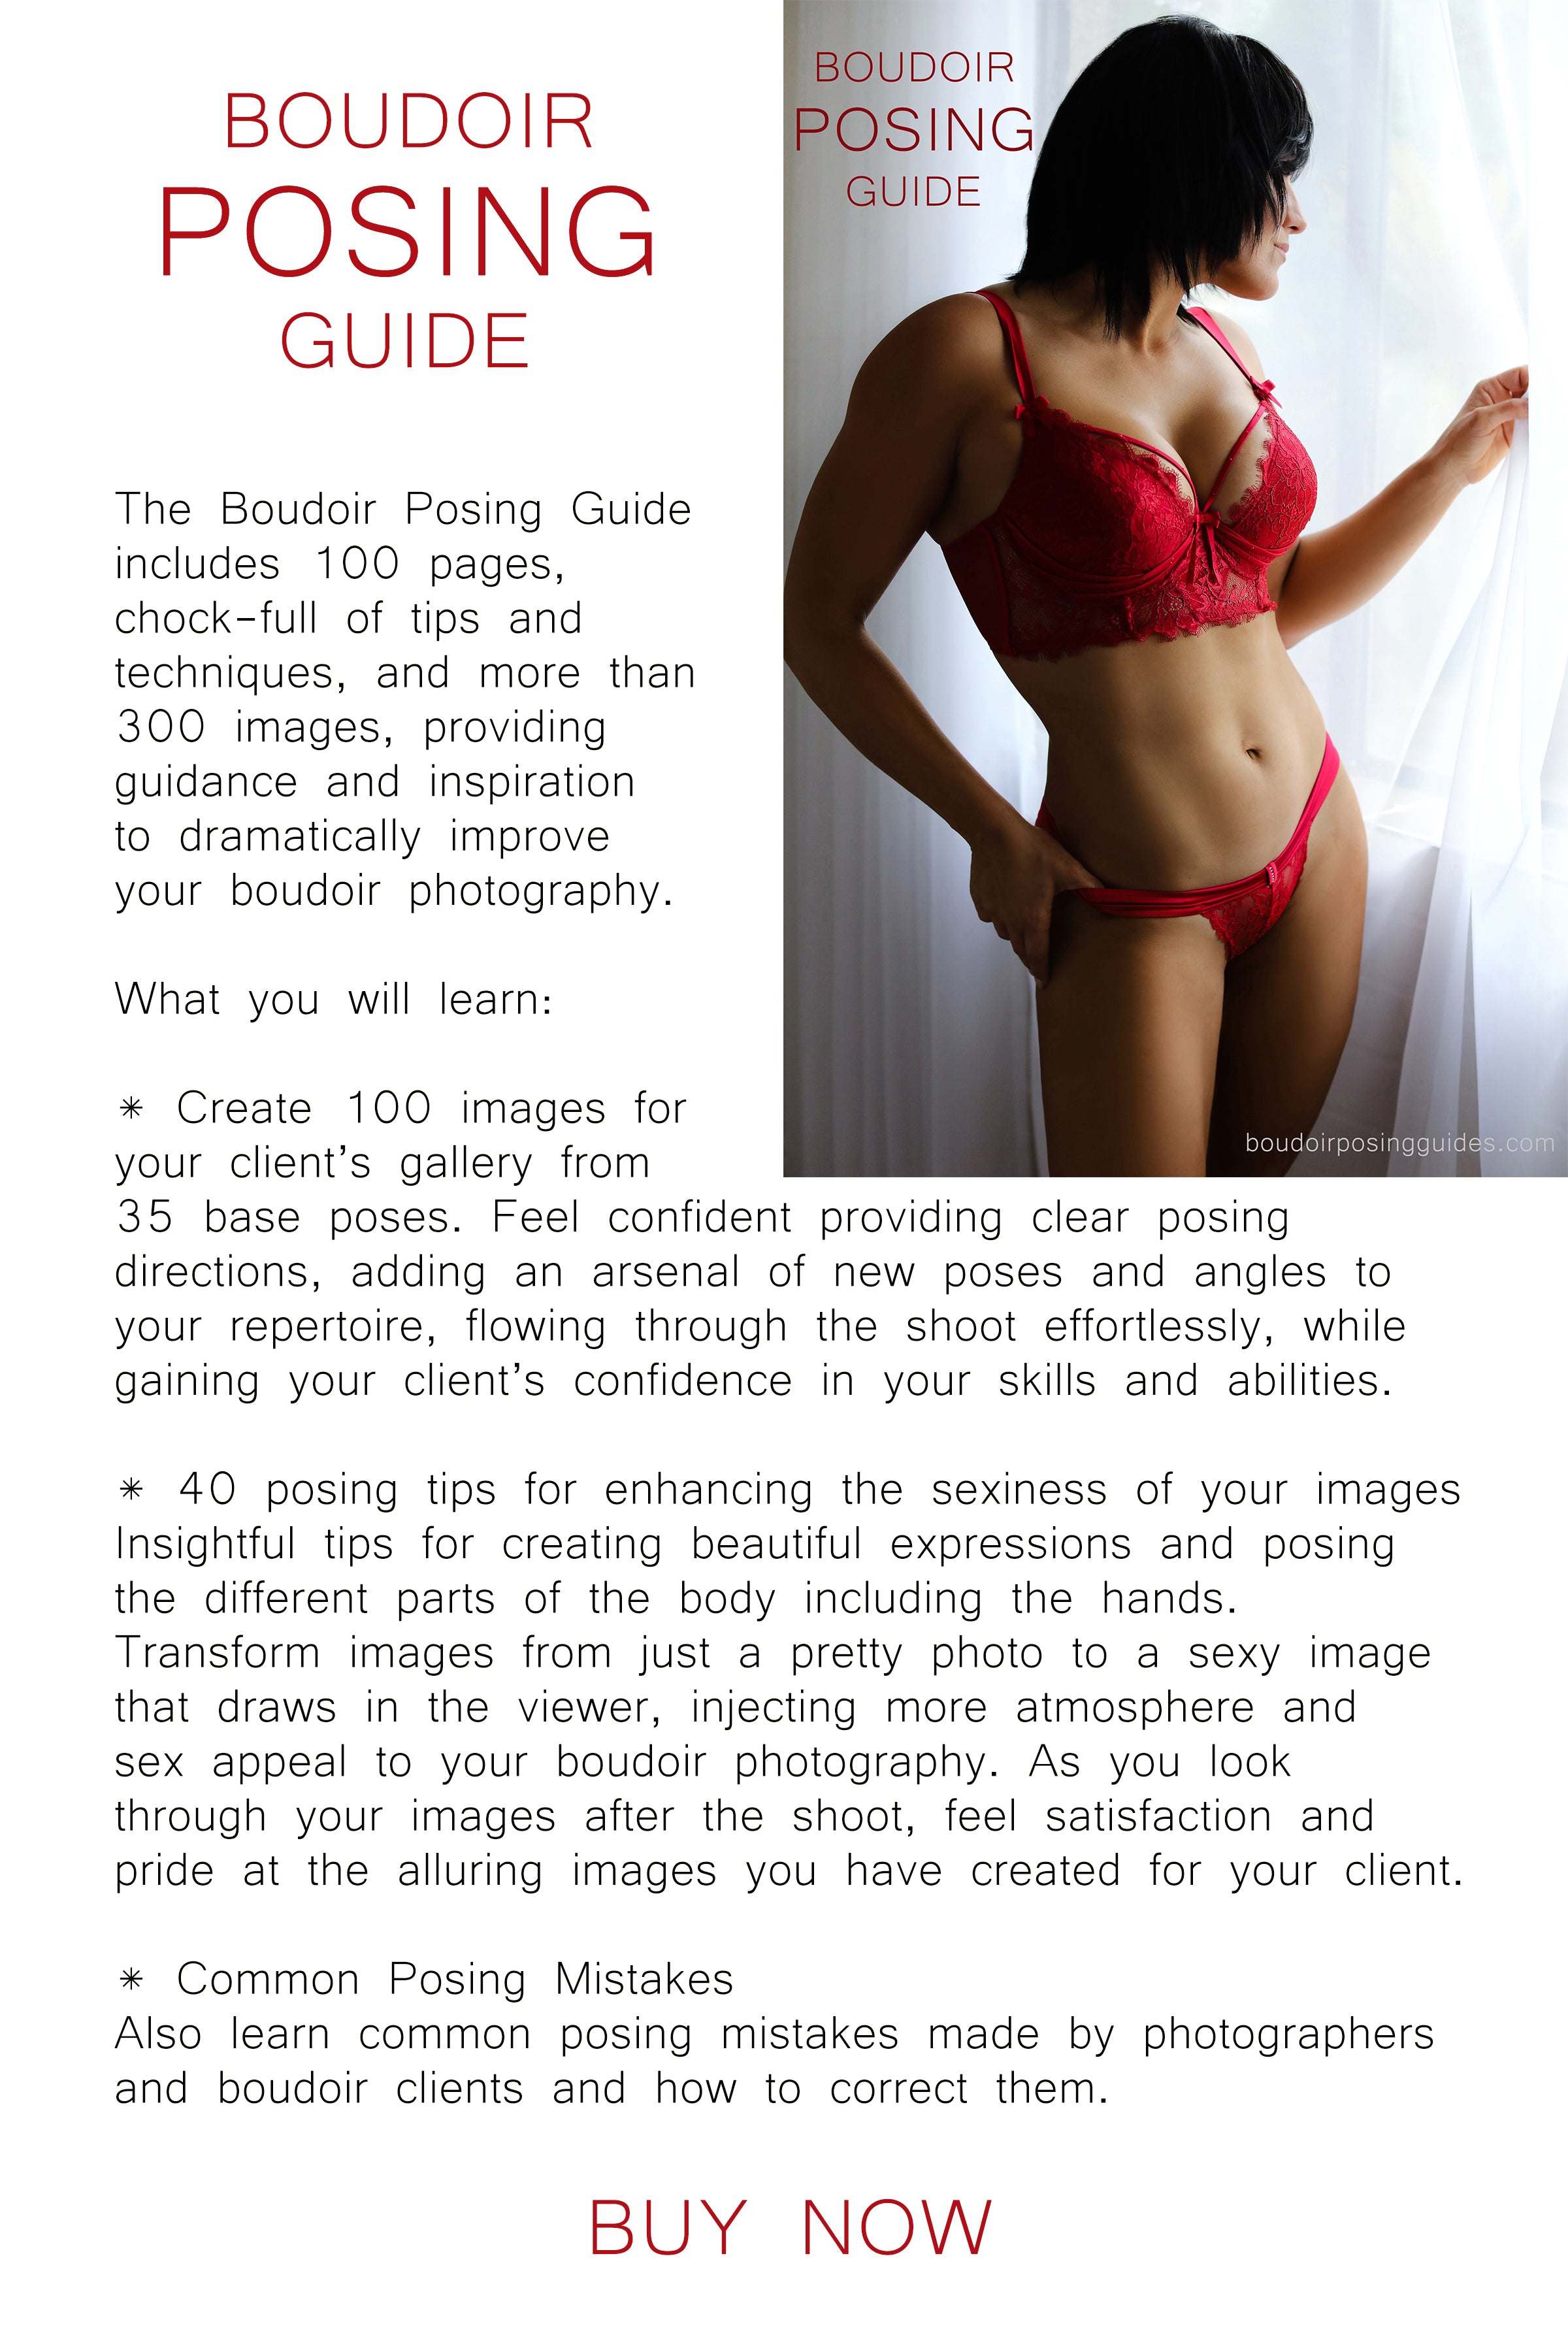 My 5 Guiding Principles For Powerful Boudoir Posing